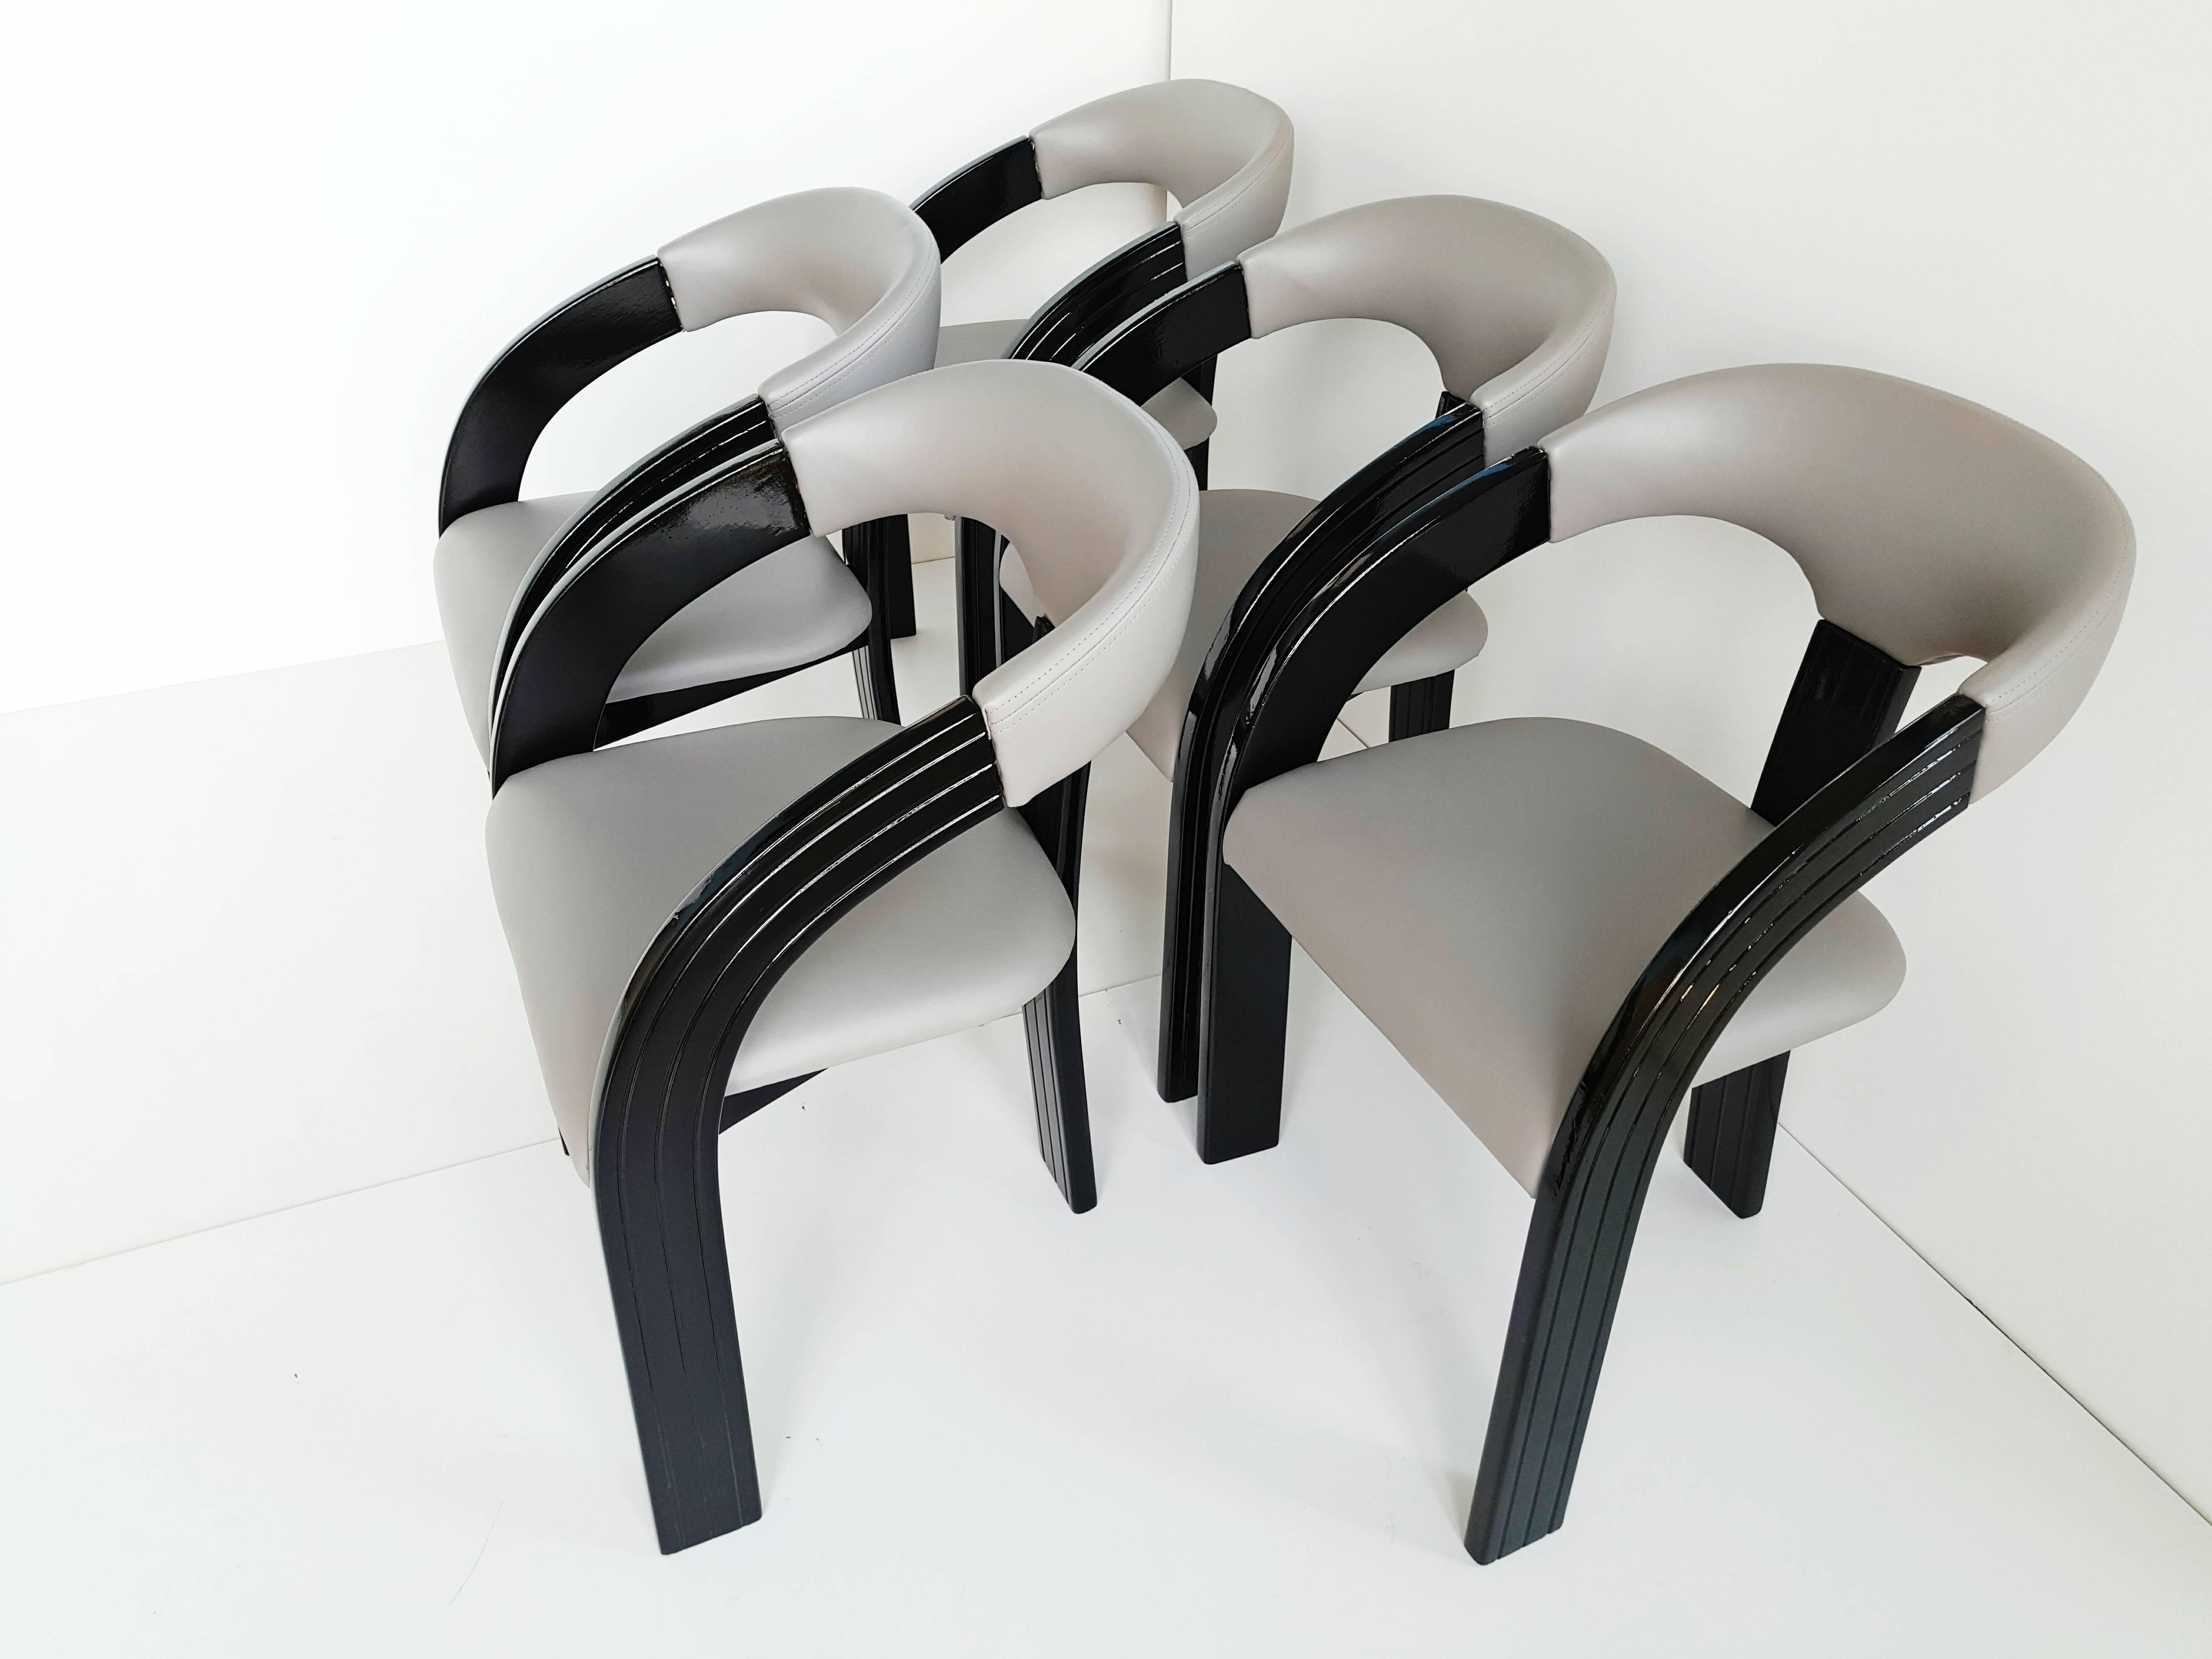 Bel ensemble de cinq fauteuils laqués noirs avec du cuir gris neuf et de la mousse neuve, fabriqués dans les années 1960. Très confortable et très original avec ses trois pieds.